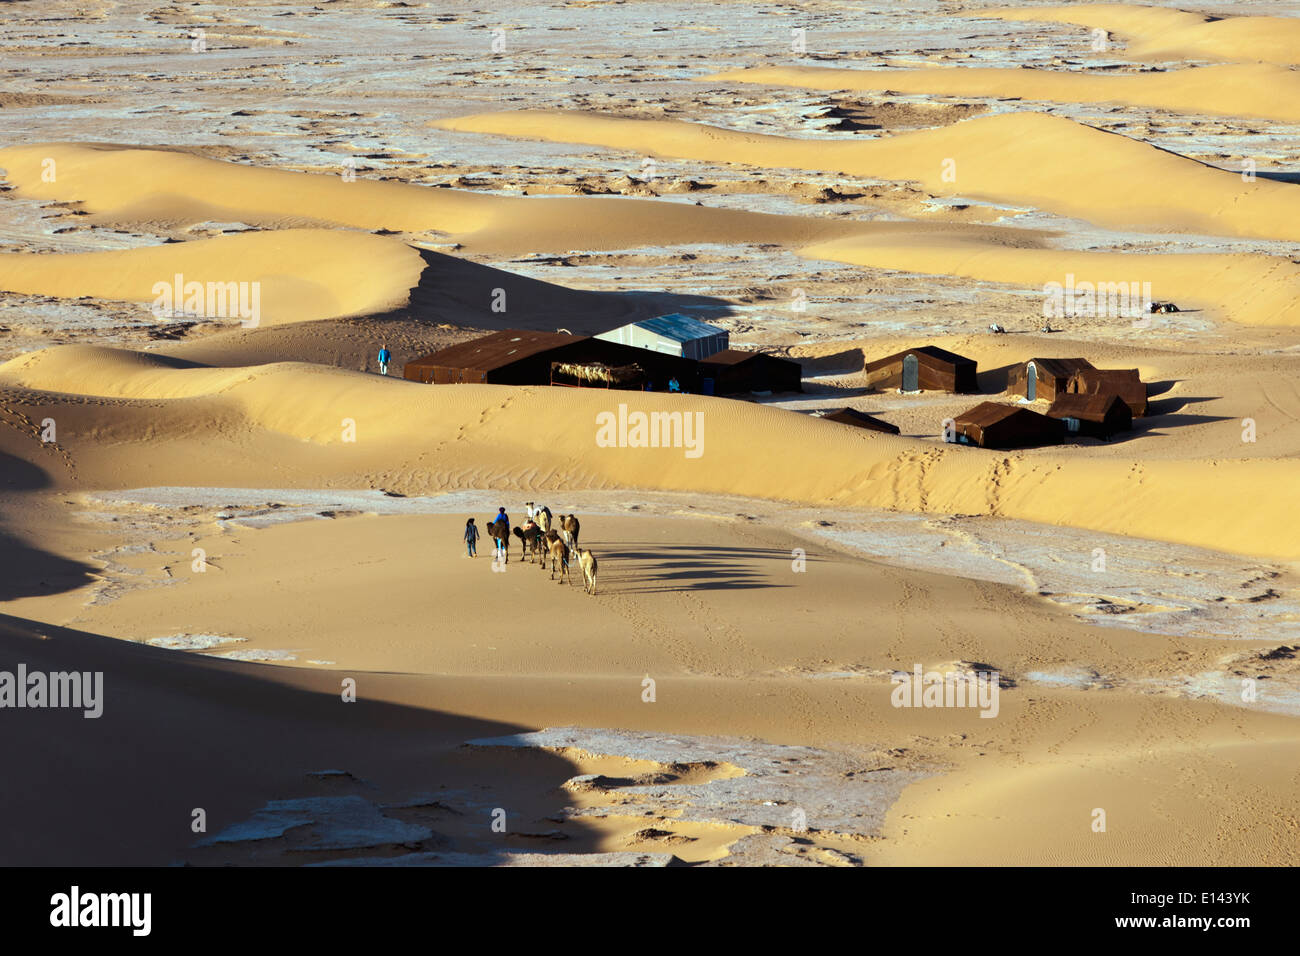 Morocco, Mhamid, Erg Chigaga sanddunes. Sahara desert. Camel drivers and camel caravan arriving at tourist camp, bivouac. Stock Photo